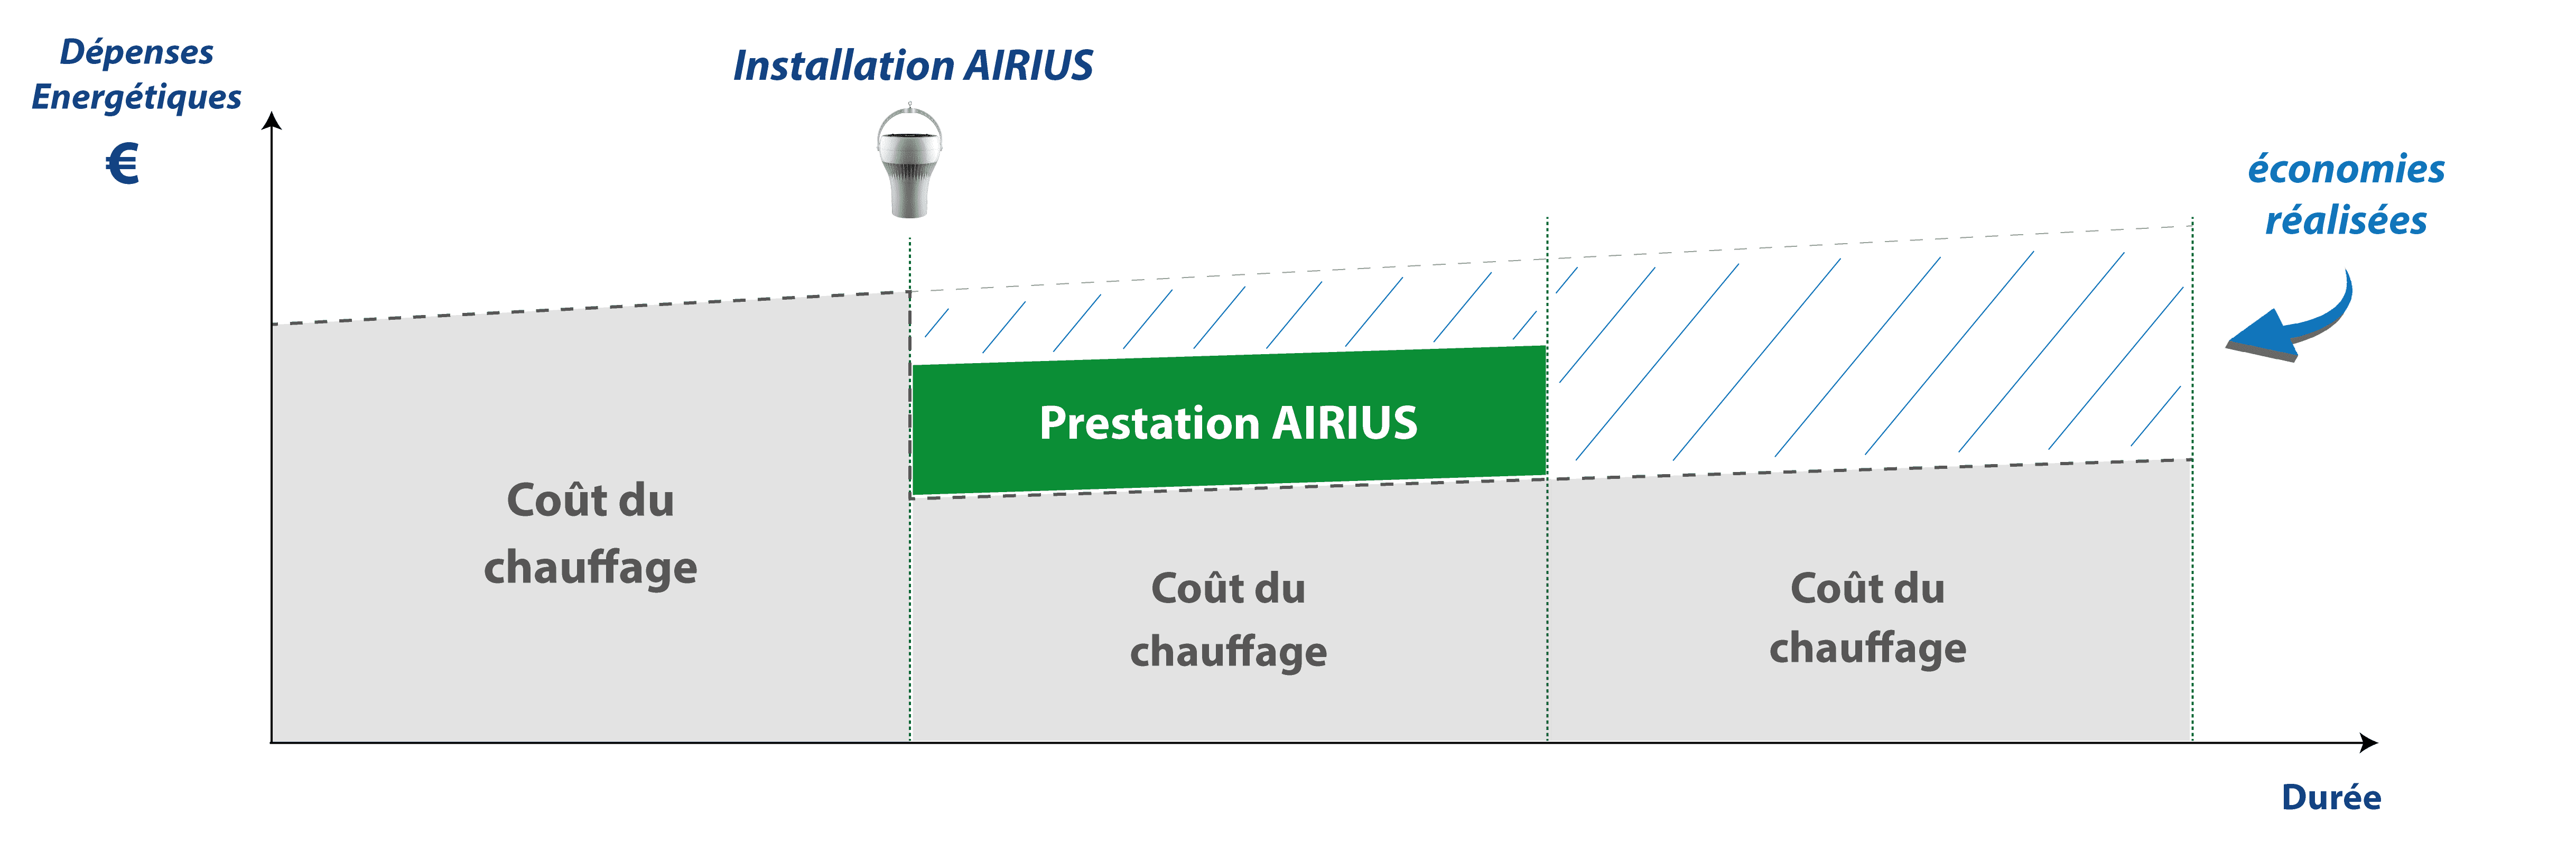 Schéma dépenses énergétiques - Airius